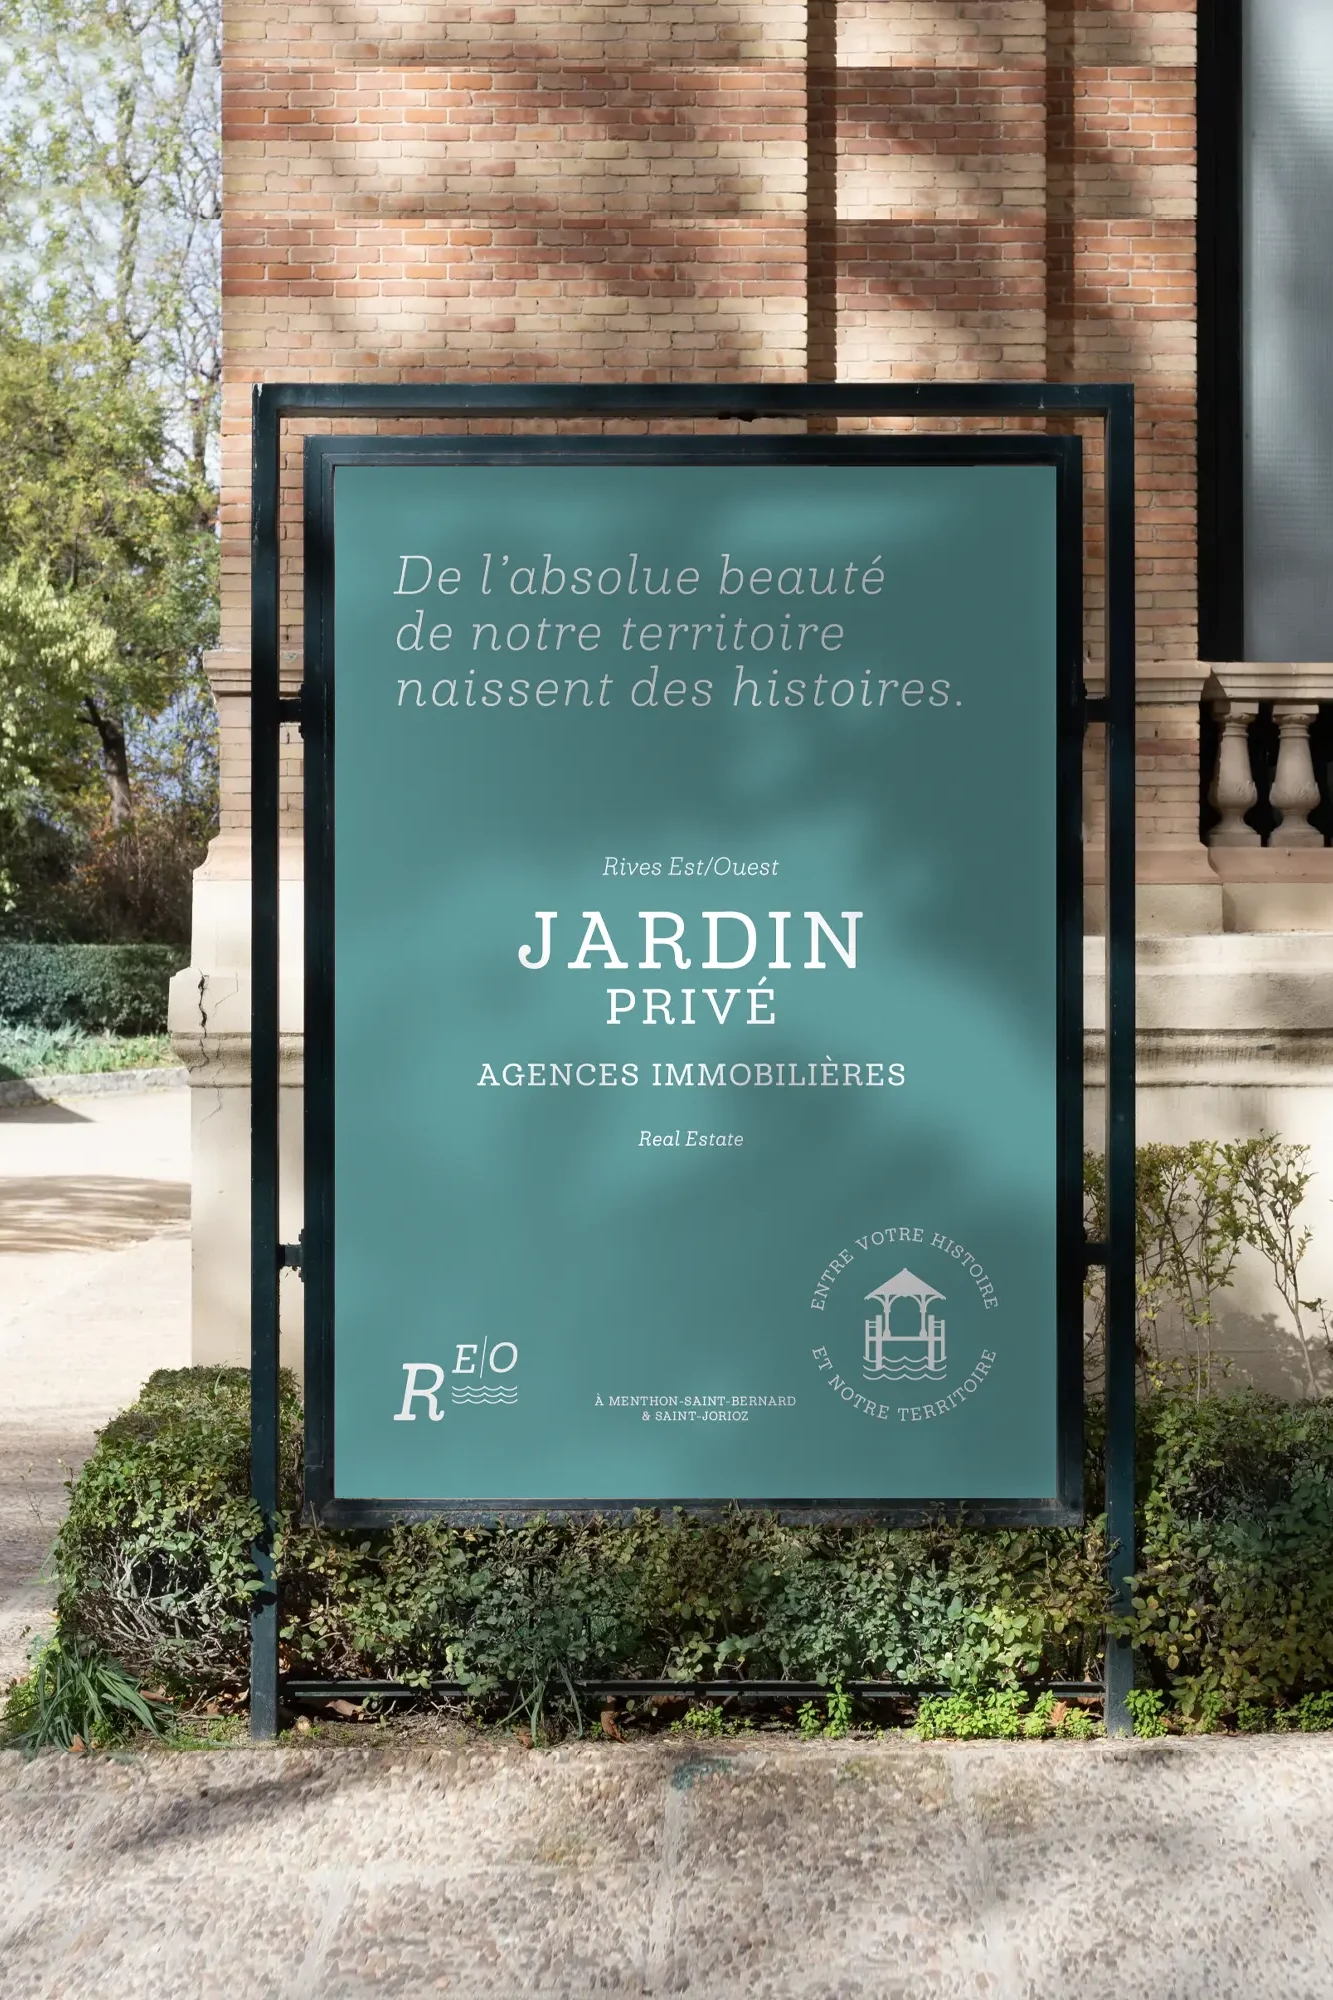 Création d'affiche pour l'agence immobilière Jardin Privé à Annecy par Blue1310, graphiste freelance en Haute-Savoie, mettant en avant une identité visuelle élégante et professionnelle.